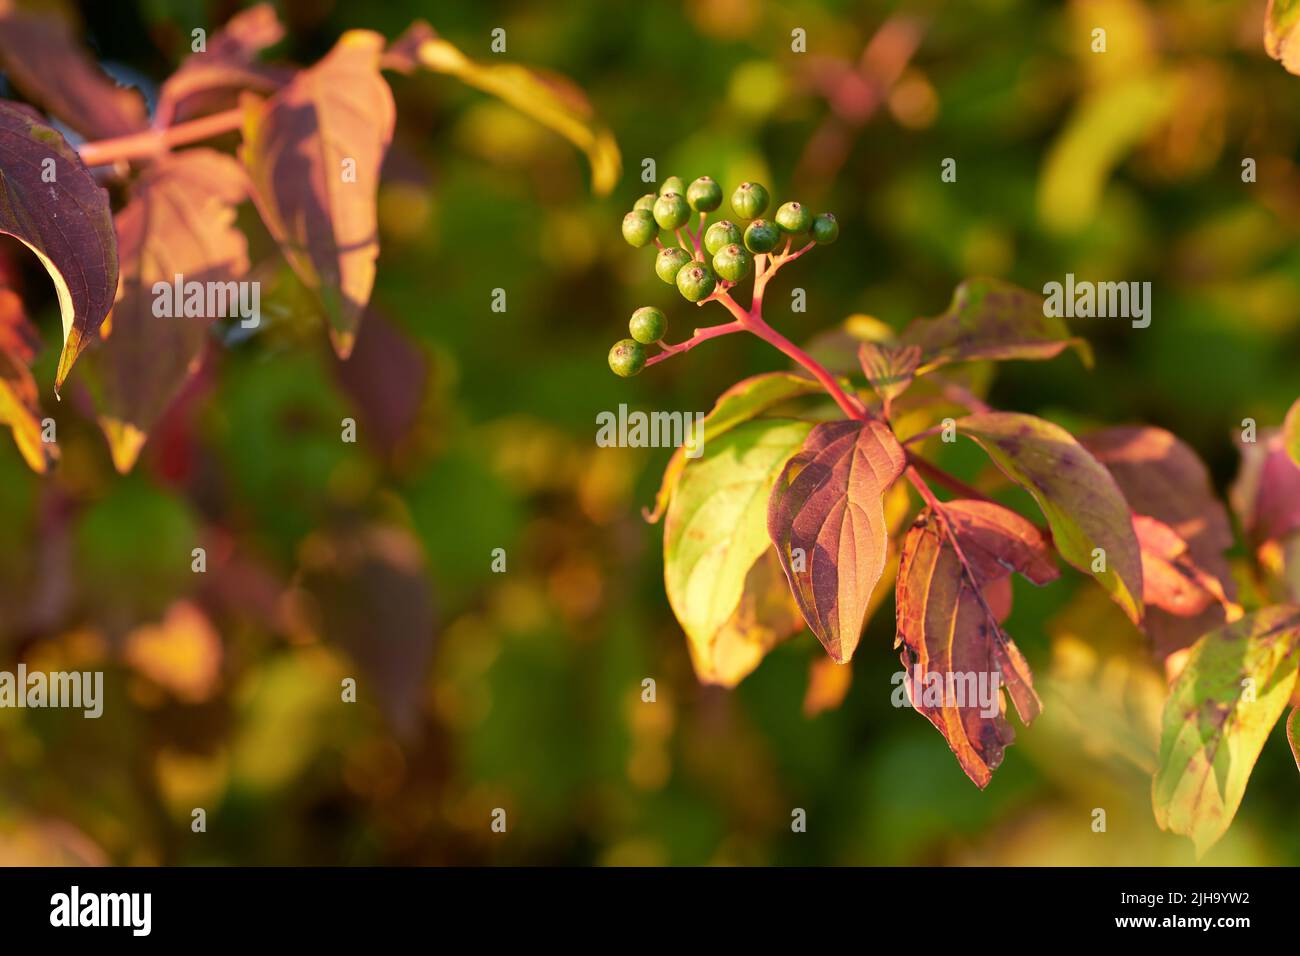 Nahaufnahme von bunten Herbstblättern und Blütenknospen, die auf Baumzweigen mit Kopierraum wachsen. Grüne, rote und braune Wildpflanzen wachsen auf Stielen in einem Stockfoto